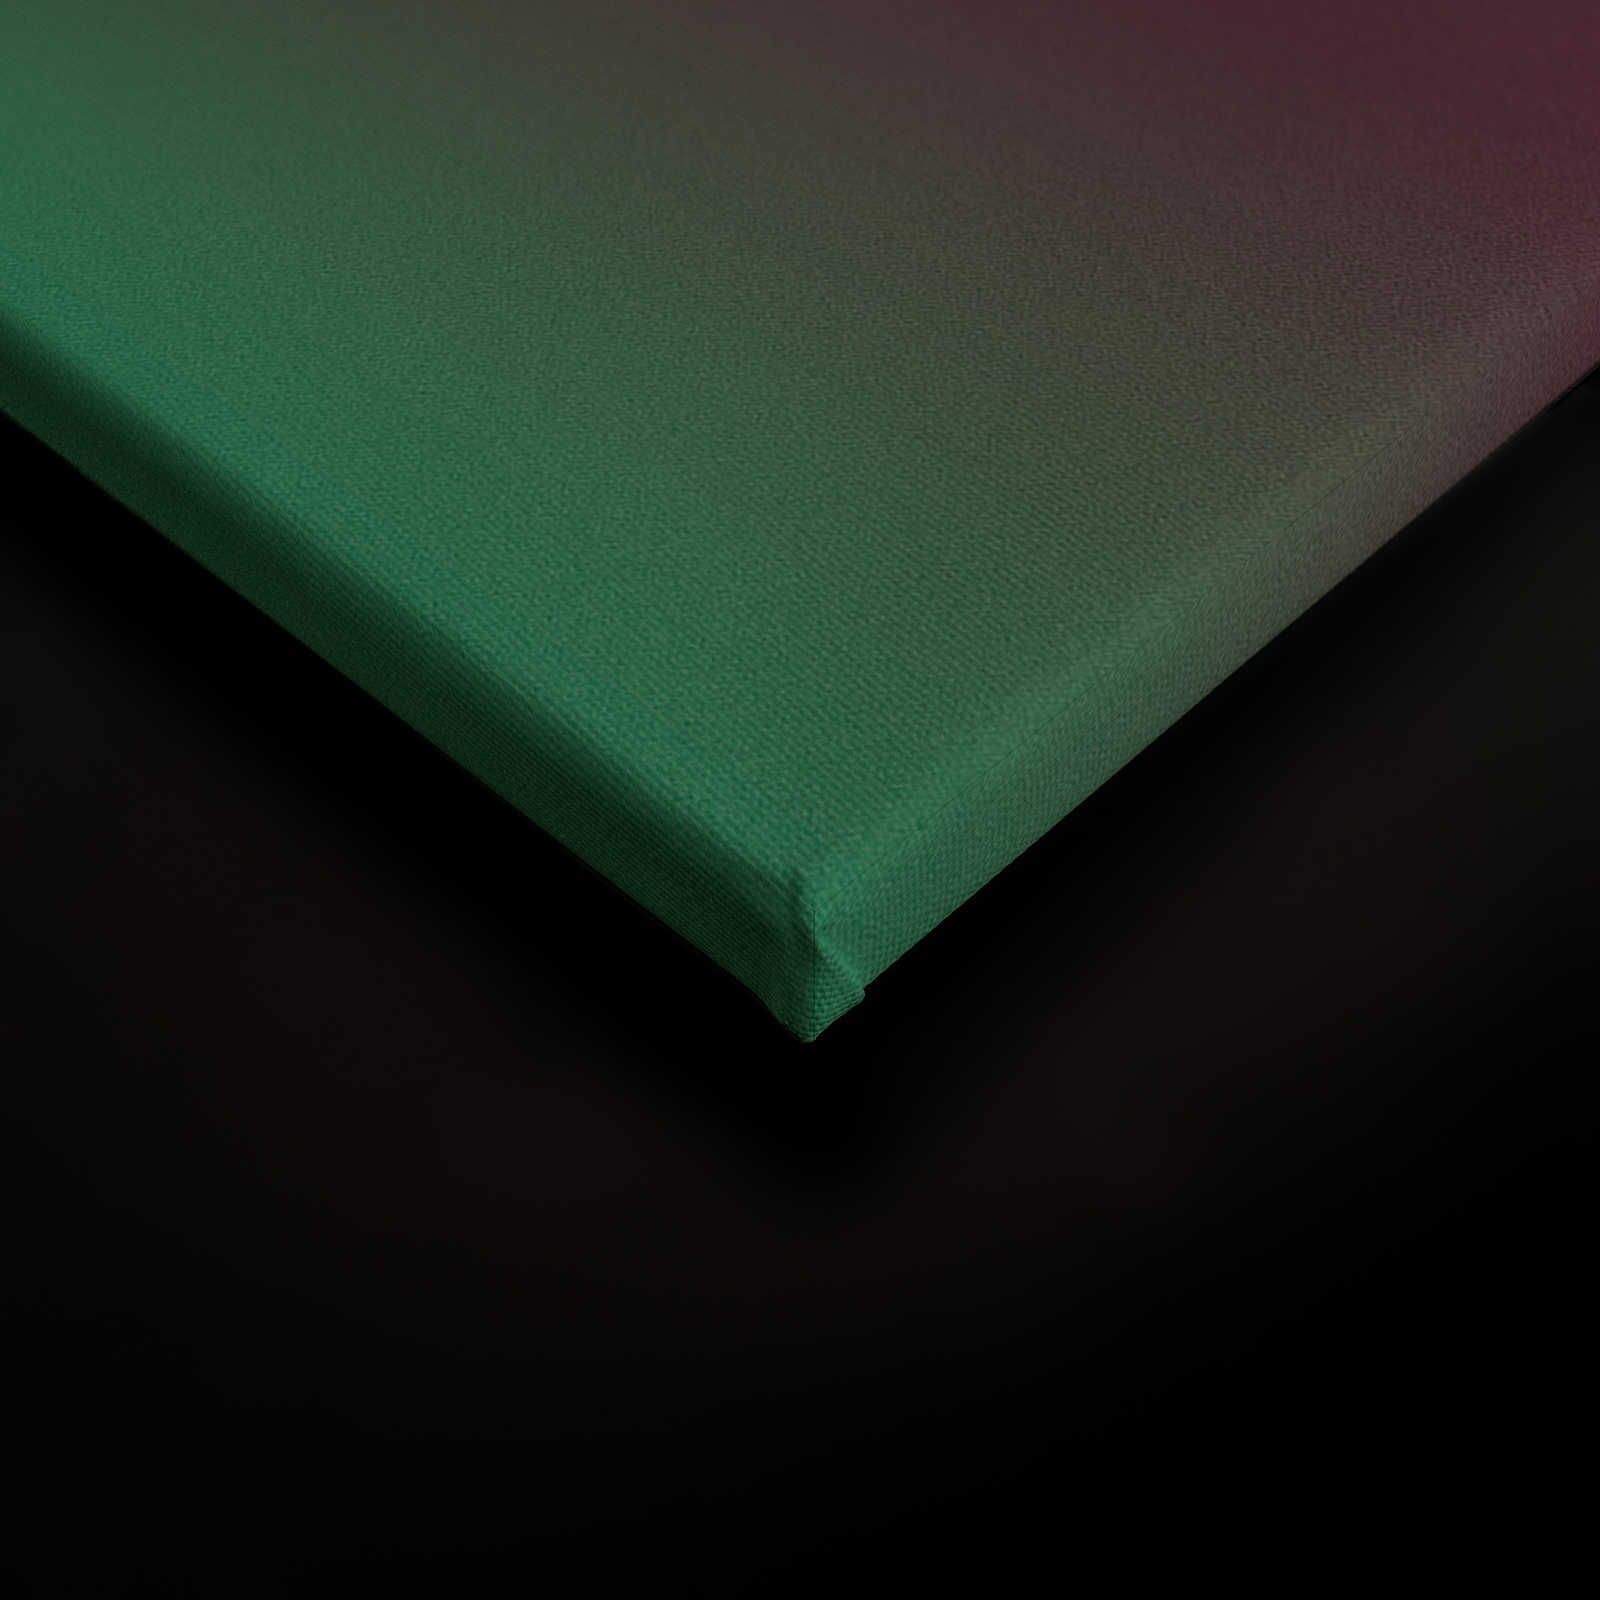             Over the Rainbow 2 - Bont streepdesign op canvas met kleurverloop - 0.90 m x 0.60 m
        